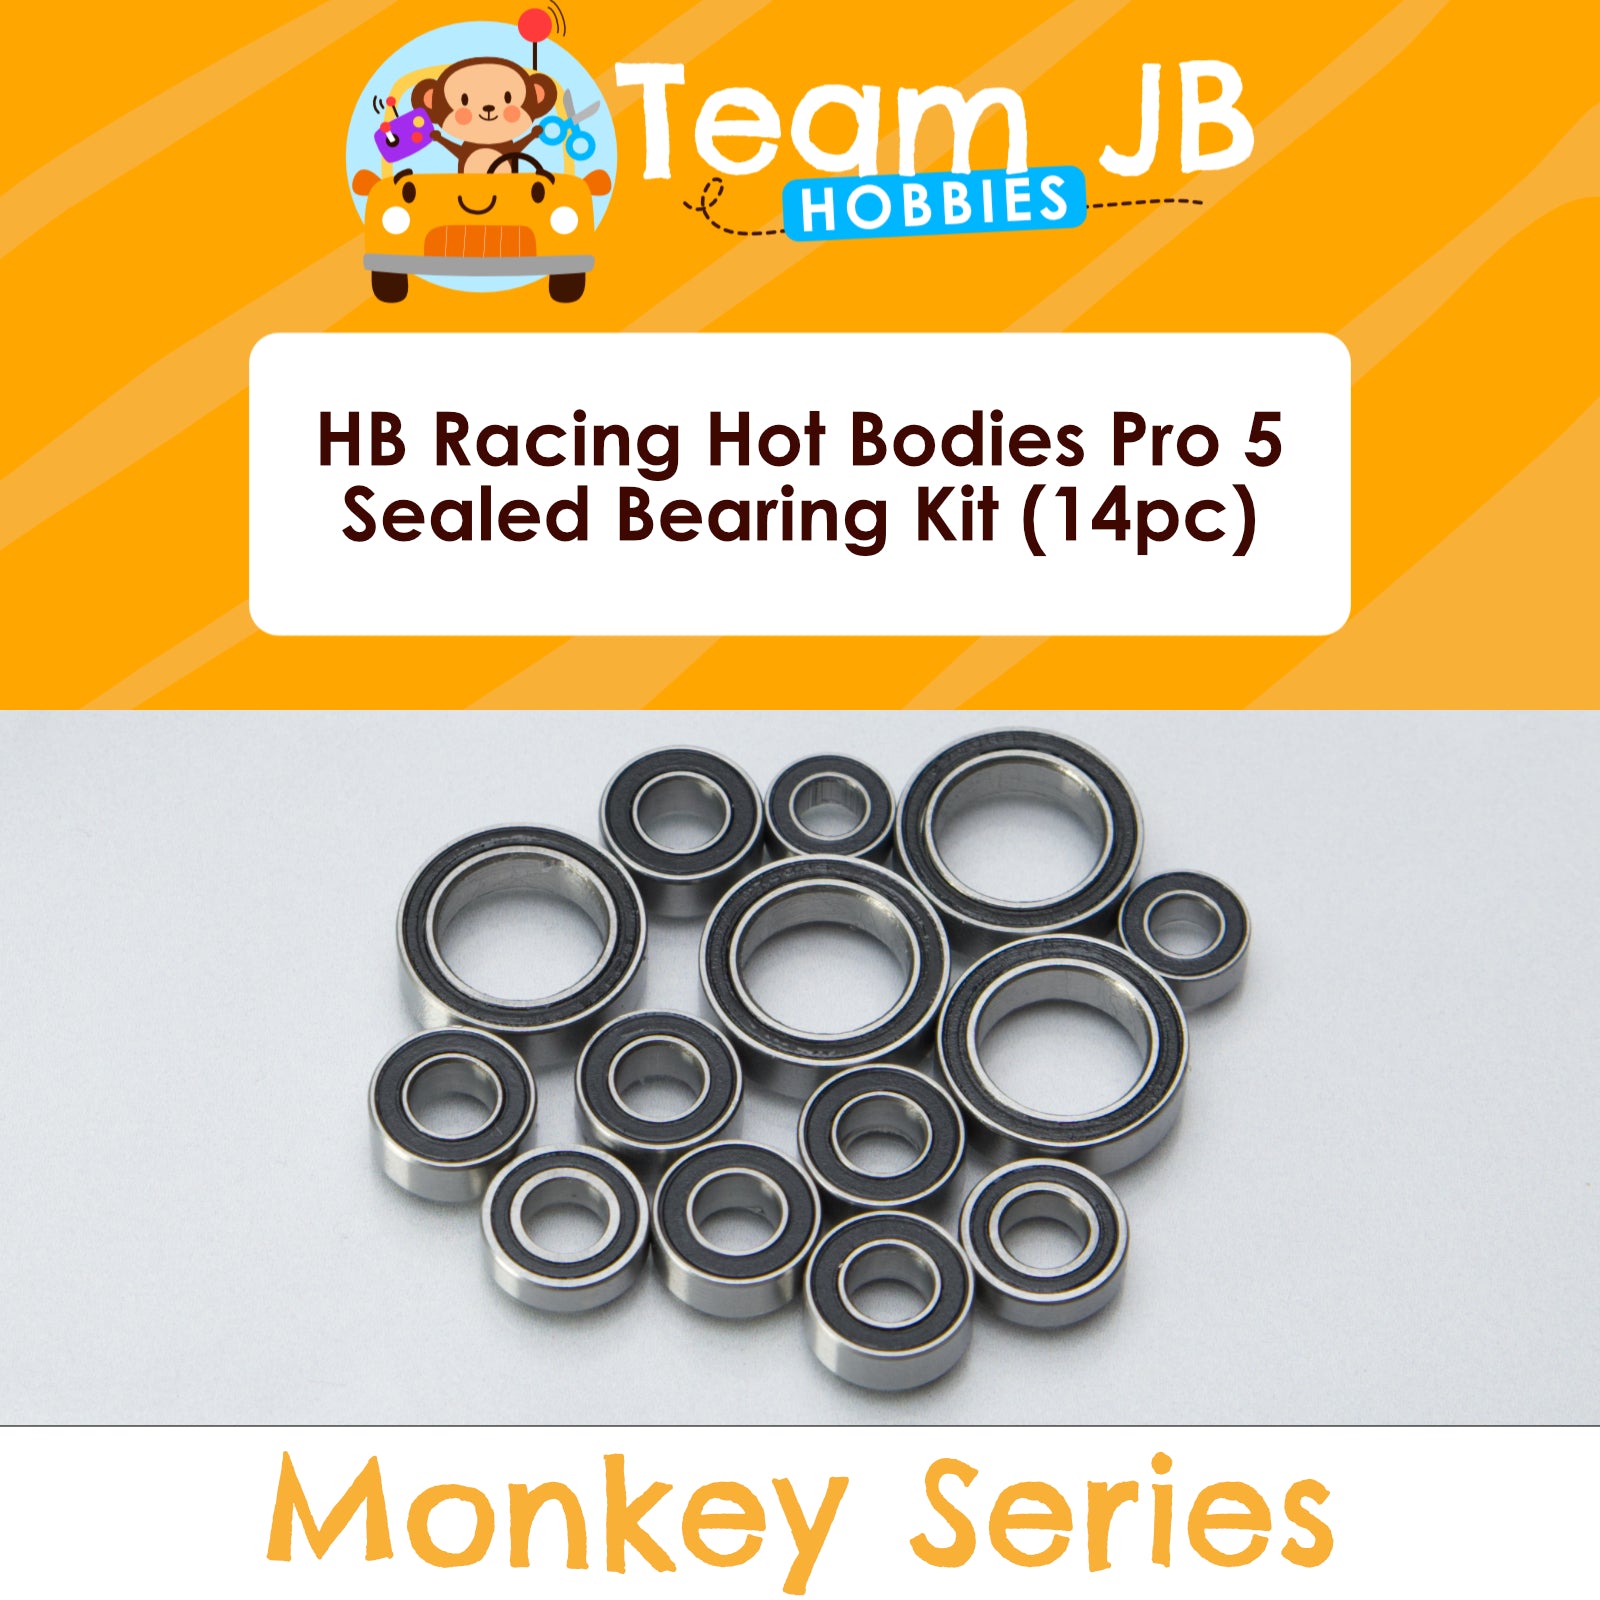 HB Racing Hot Bodies Pro 5 - Sealed Bearing Kit